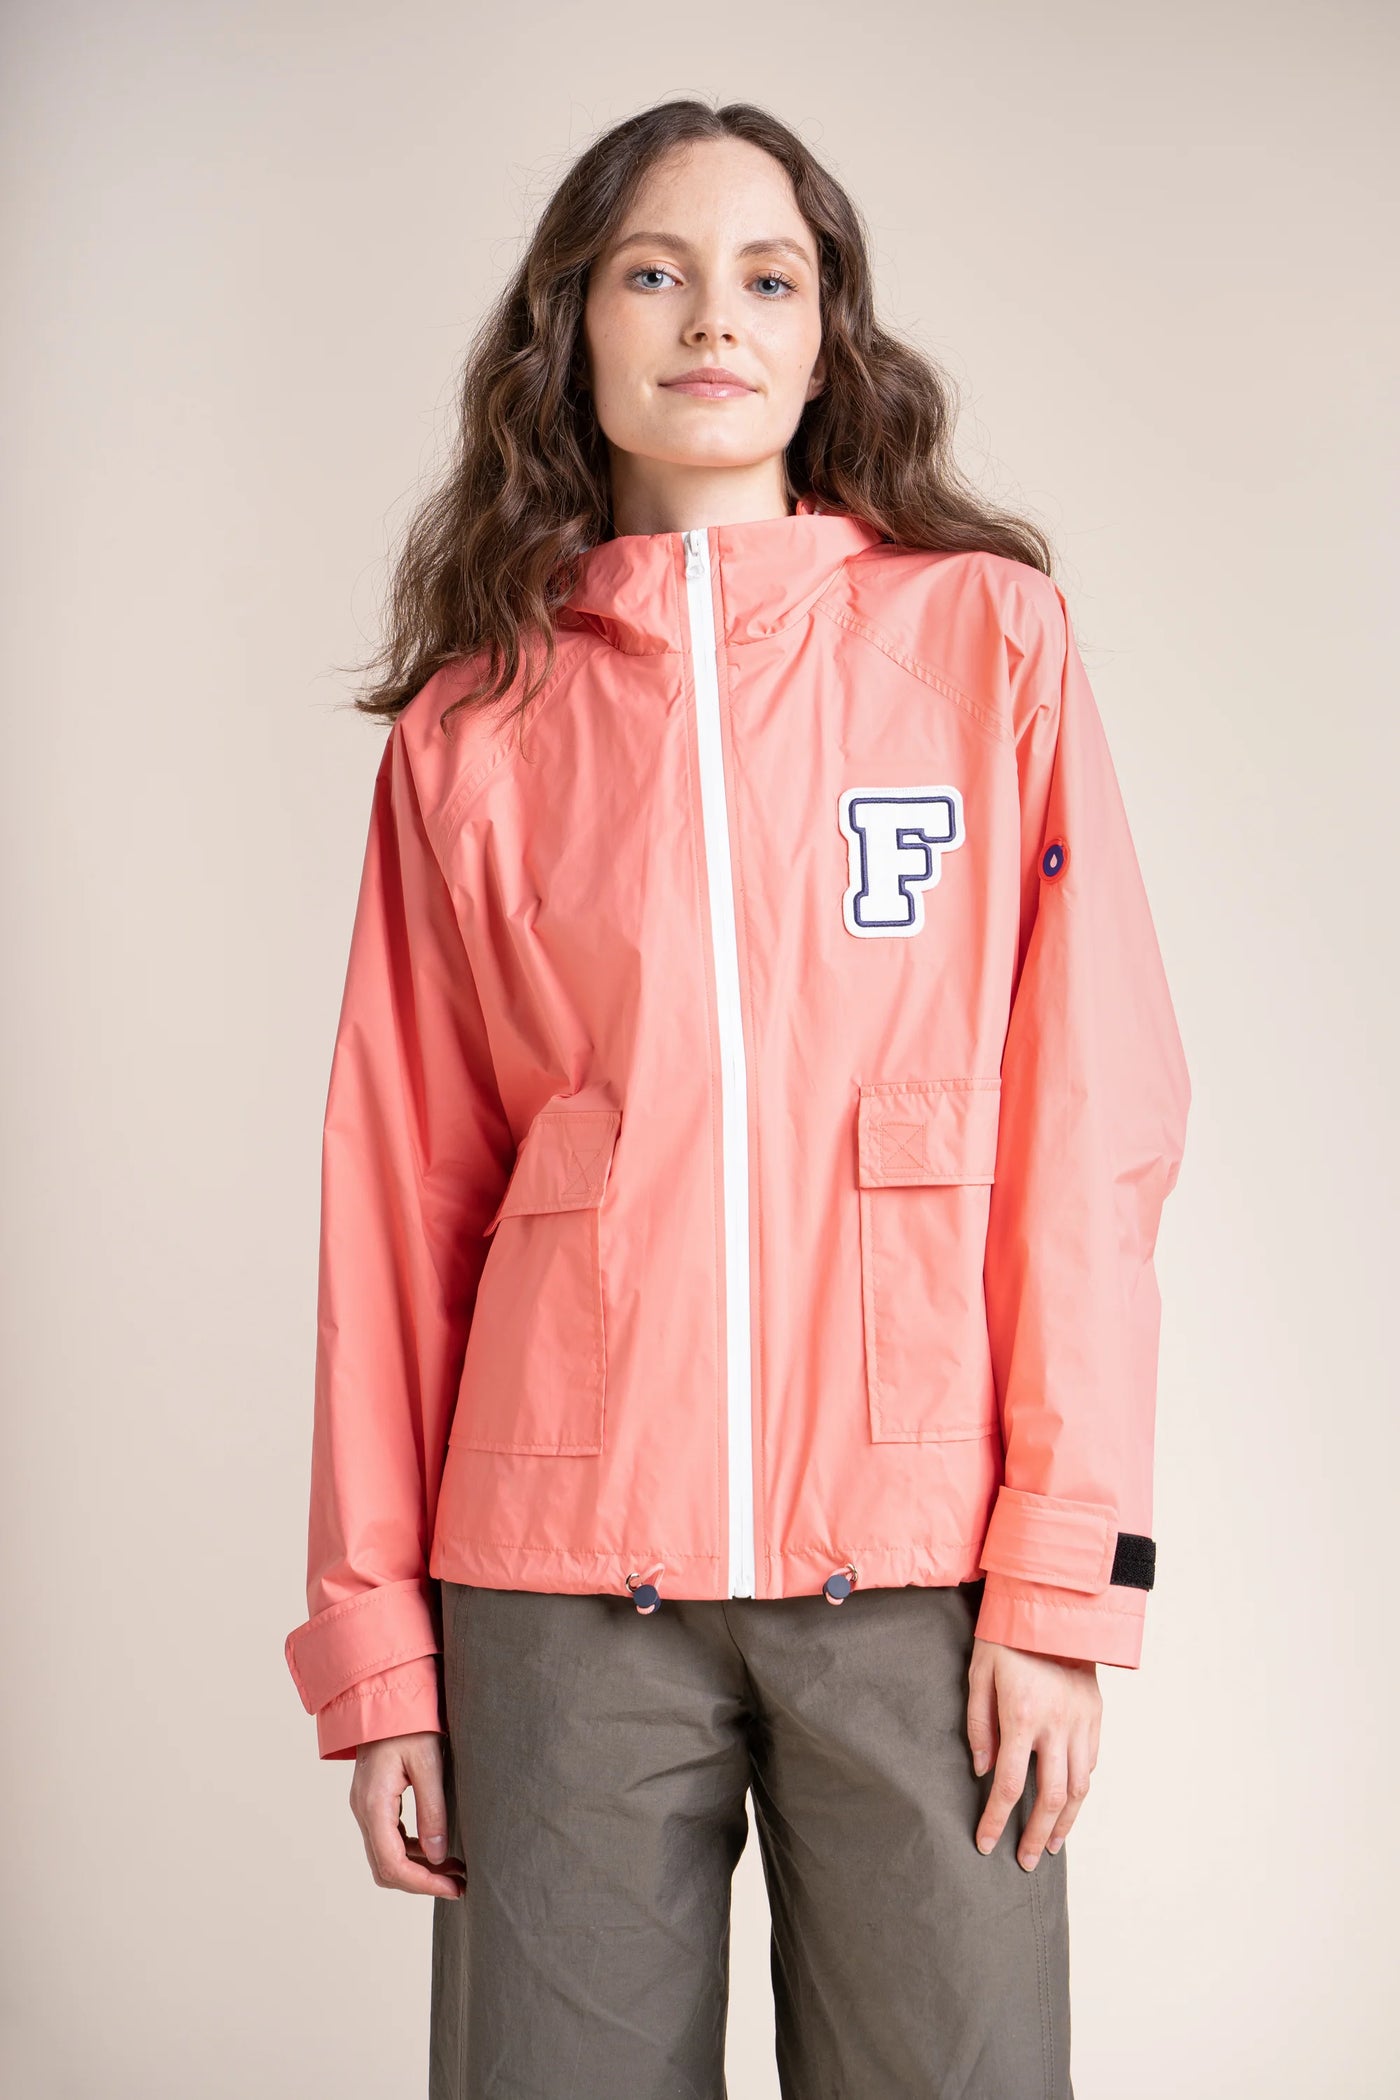 Sorbonne - university patch jacket - Flotte #couleur_corail